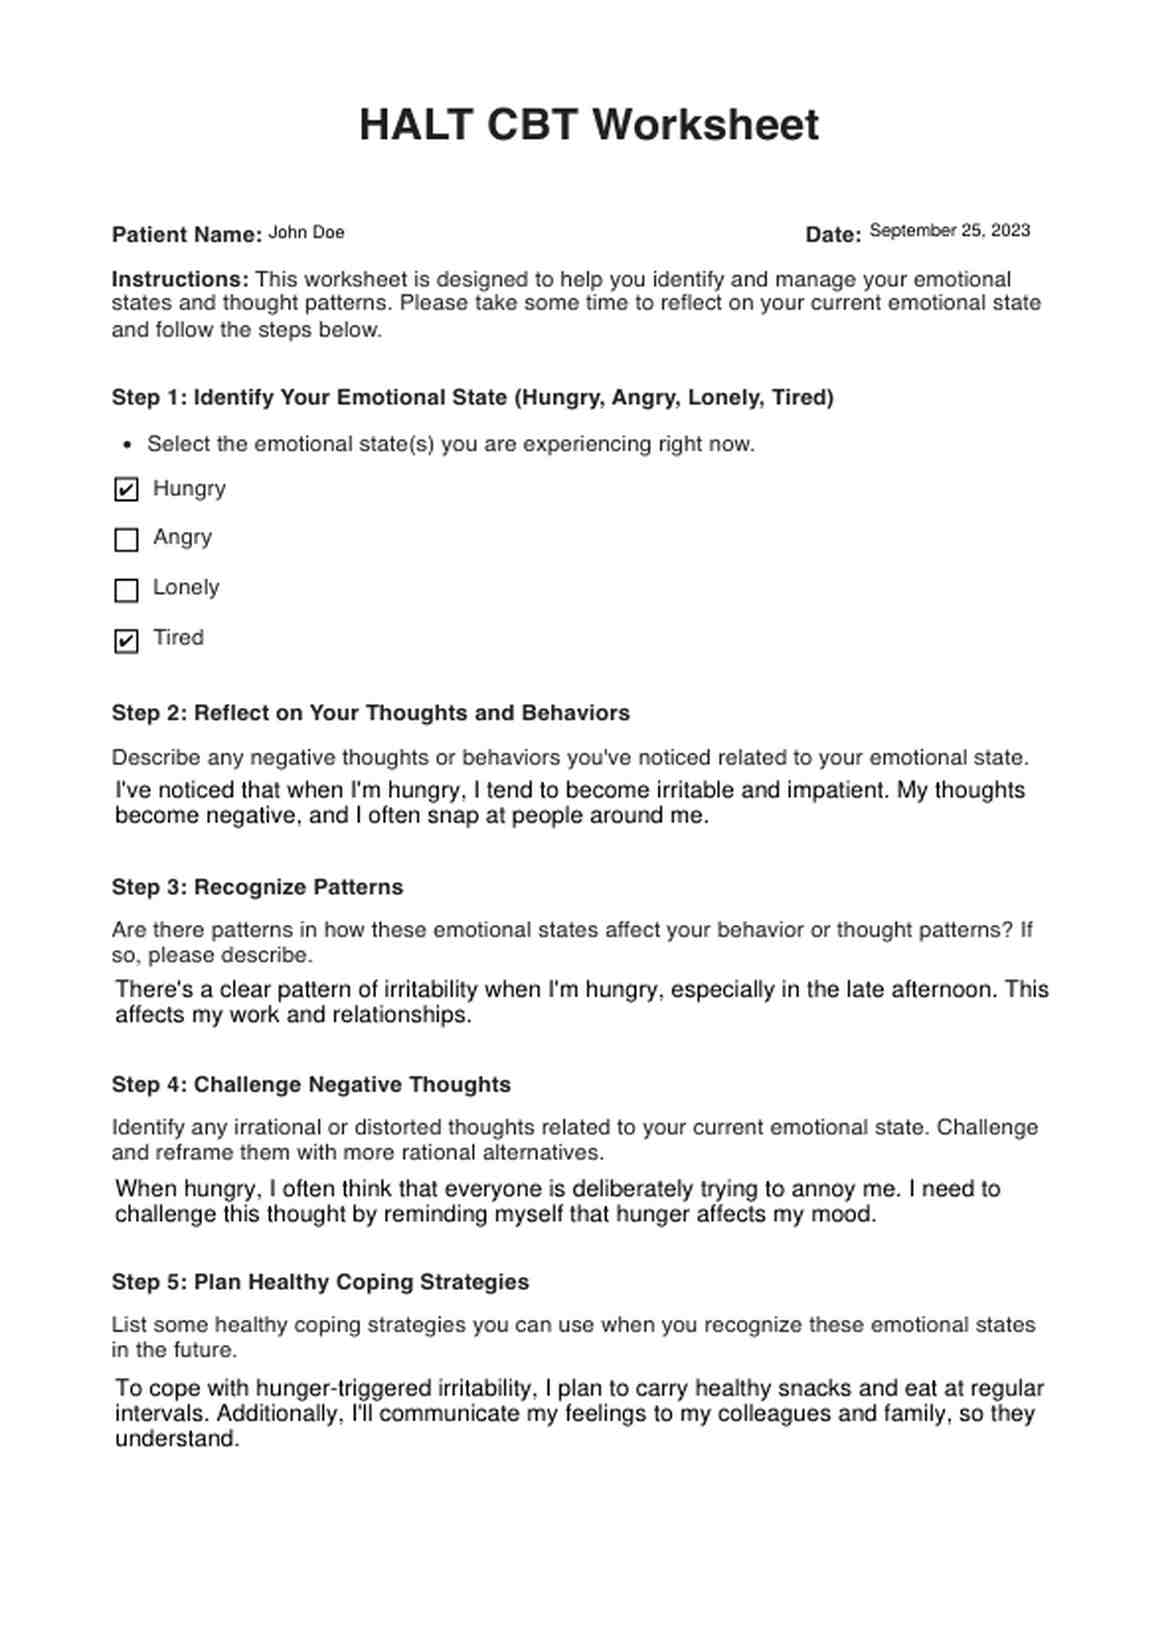 HALT CBT Worksheets PDF Example